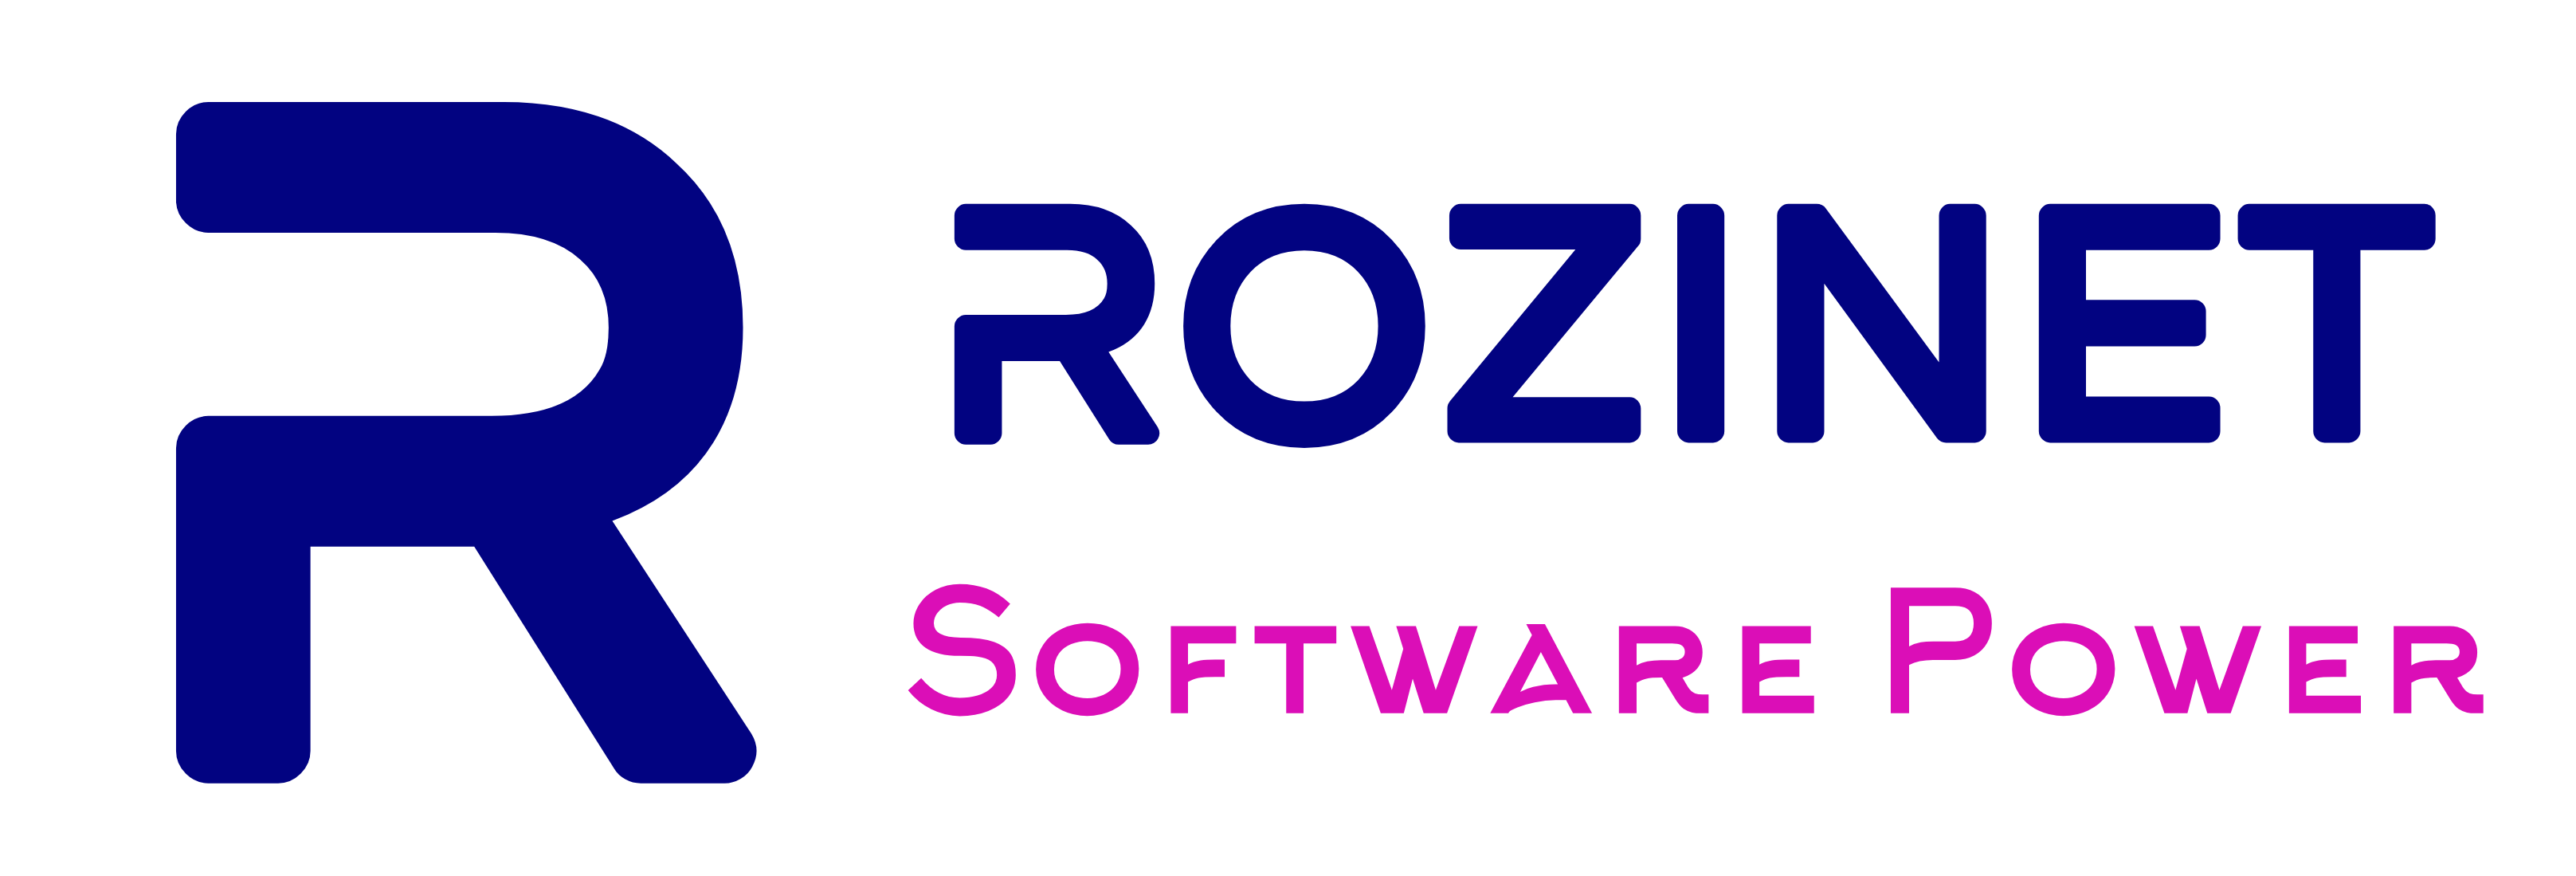 rozinet.net